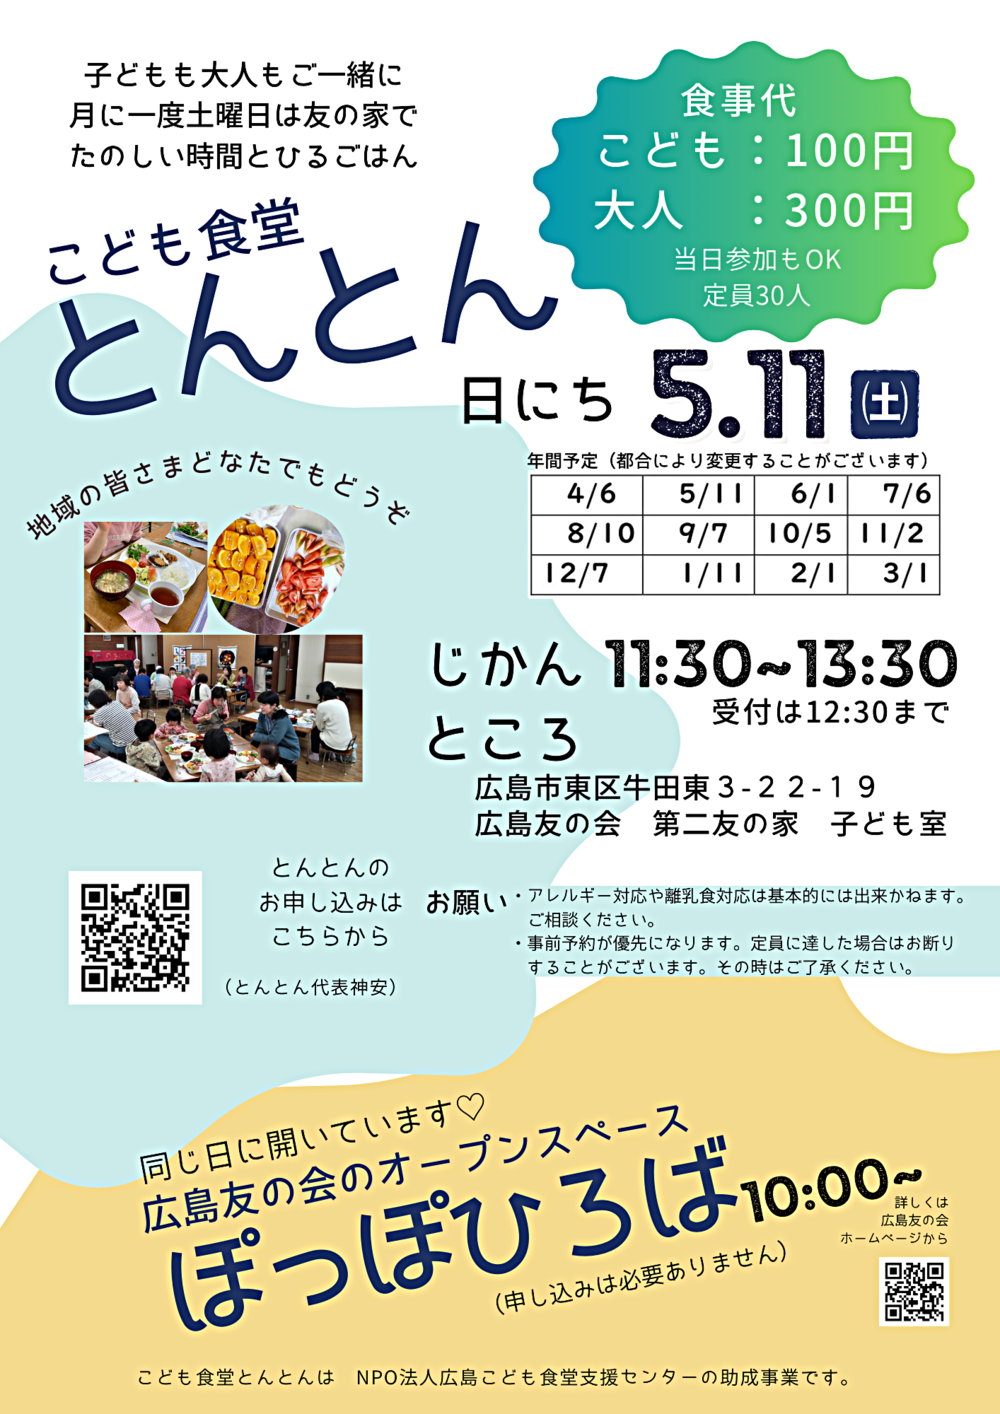 Restaurante Infantil Tonton (realizado simultaneamente: Hiroshima Friendship Open Space Poppo Hiroba)